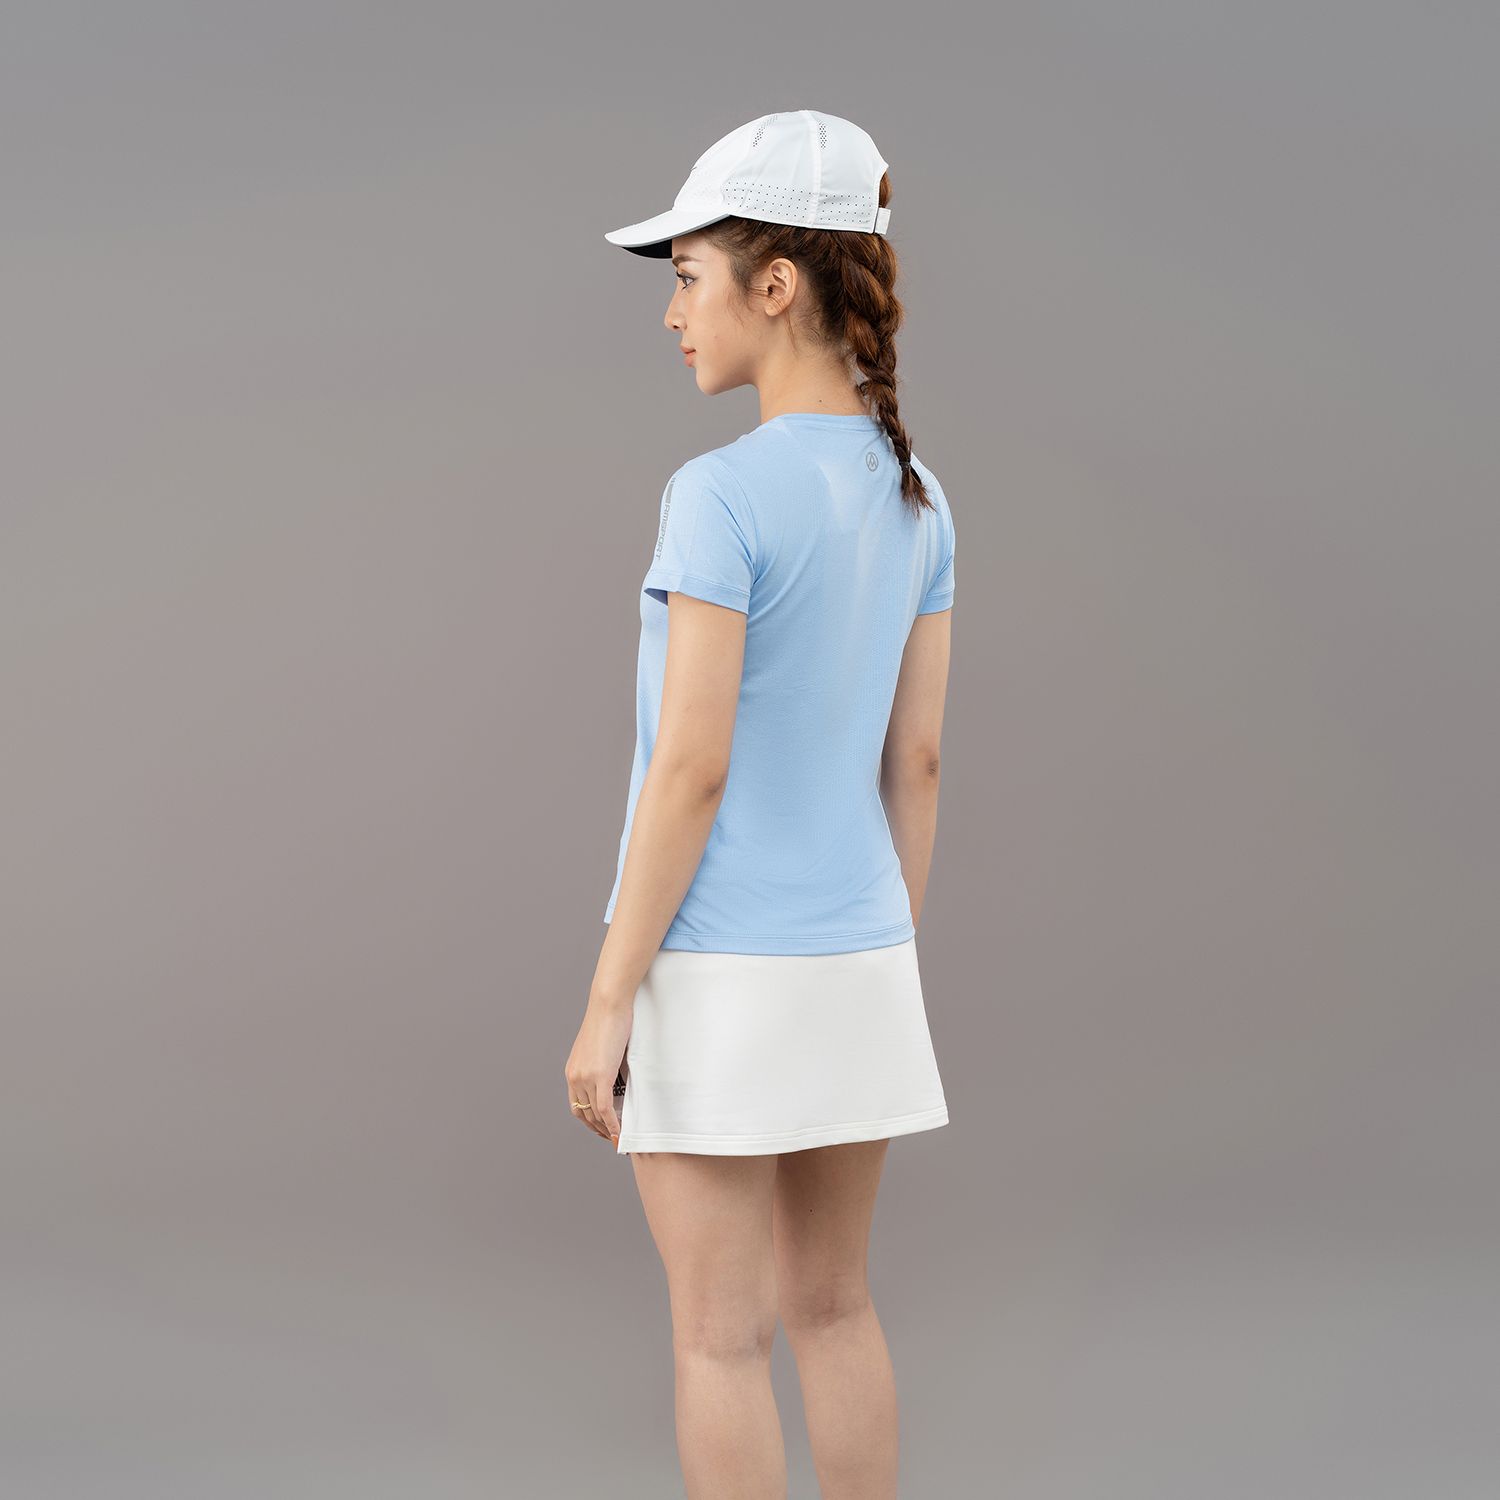  Áo Tshirt nữ AM xanh da trời TSW2301-33 